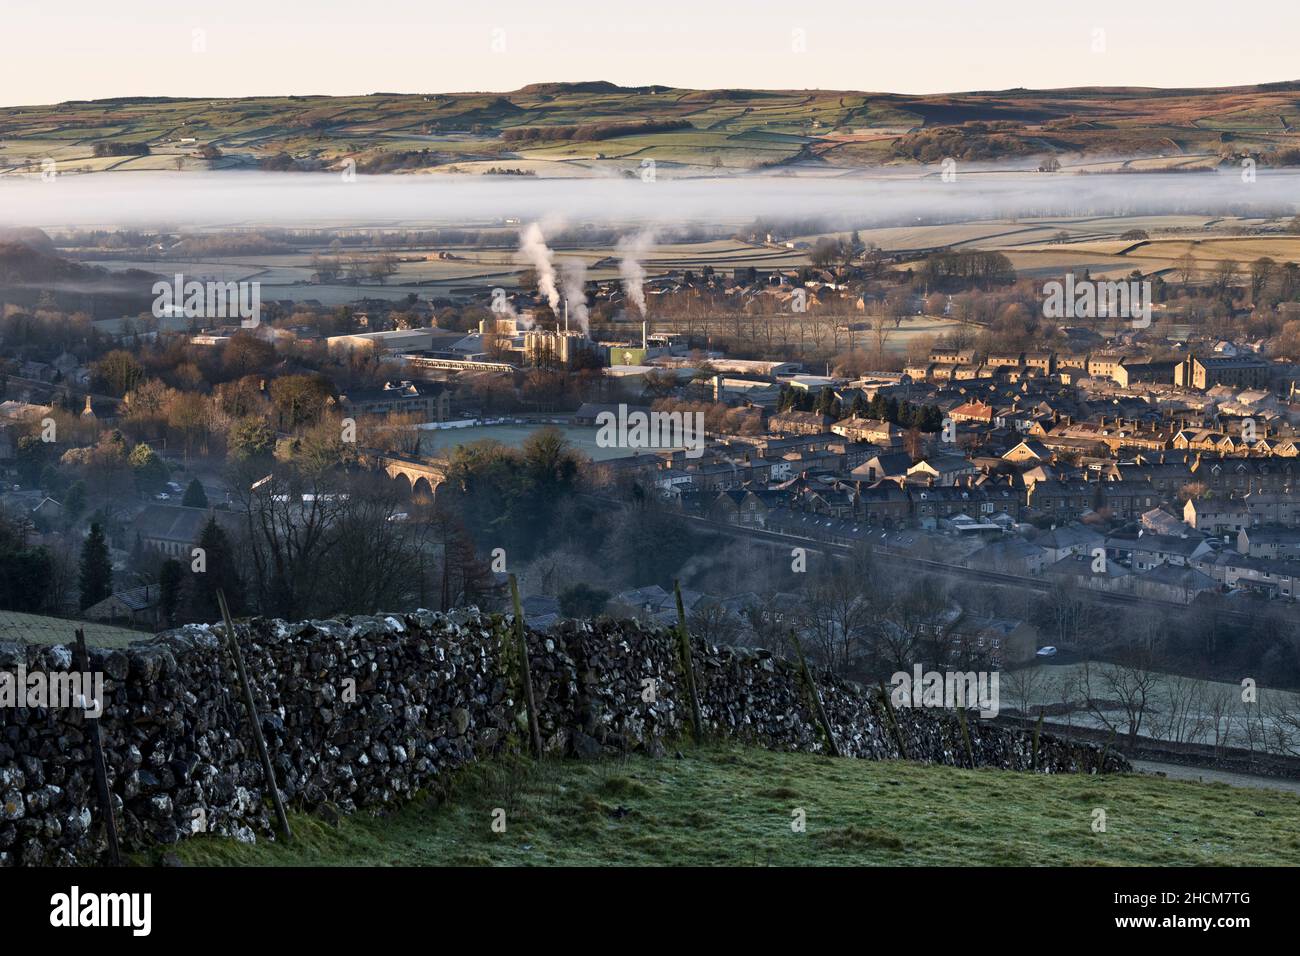 Inversione della temperatura invernale, con nube bassa sopra la città di Yorkshire Dales di Settle. Il fumo sorge dal Creamery Settle (Arla Dairy) nel centro. Foto Stock